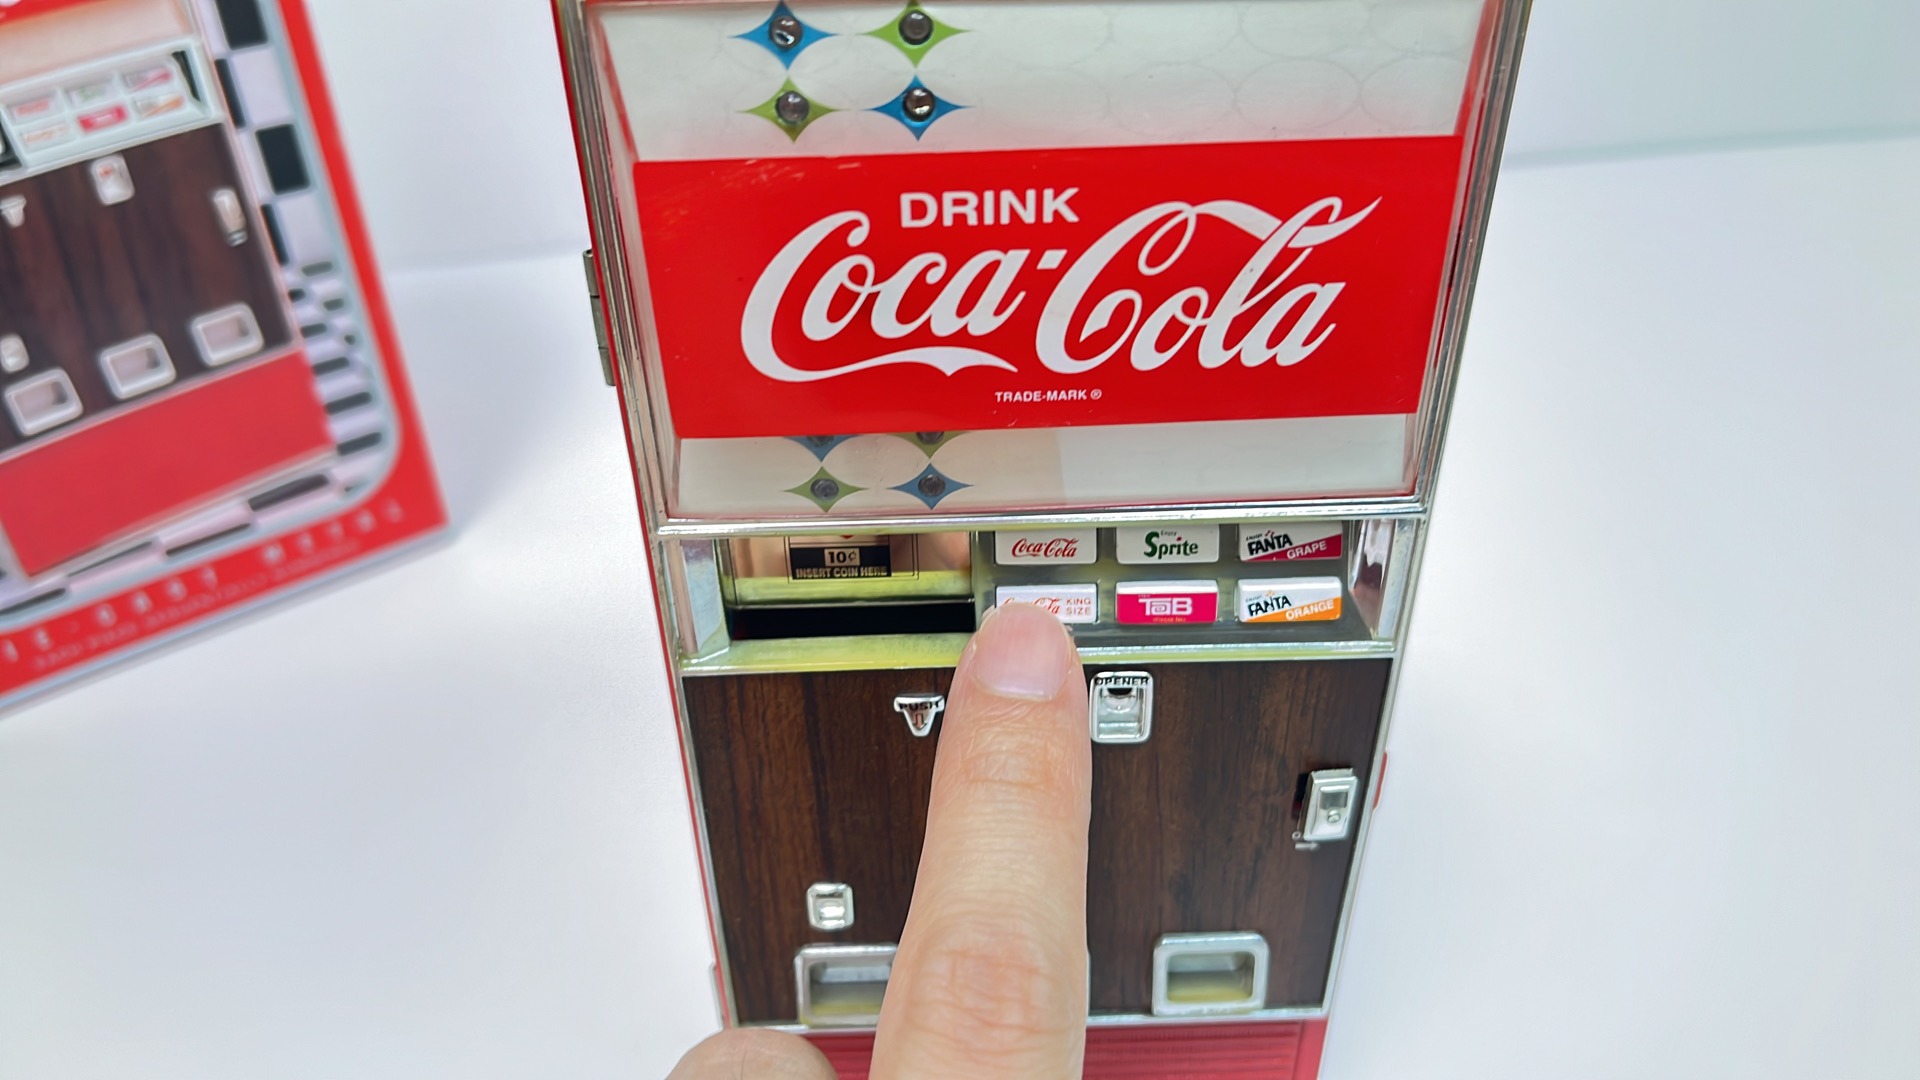 コカ・コーラ 貯金箱 レトロ-